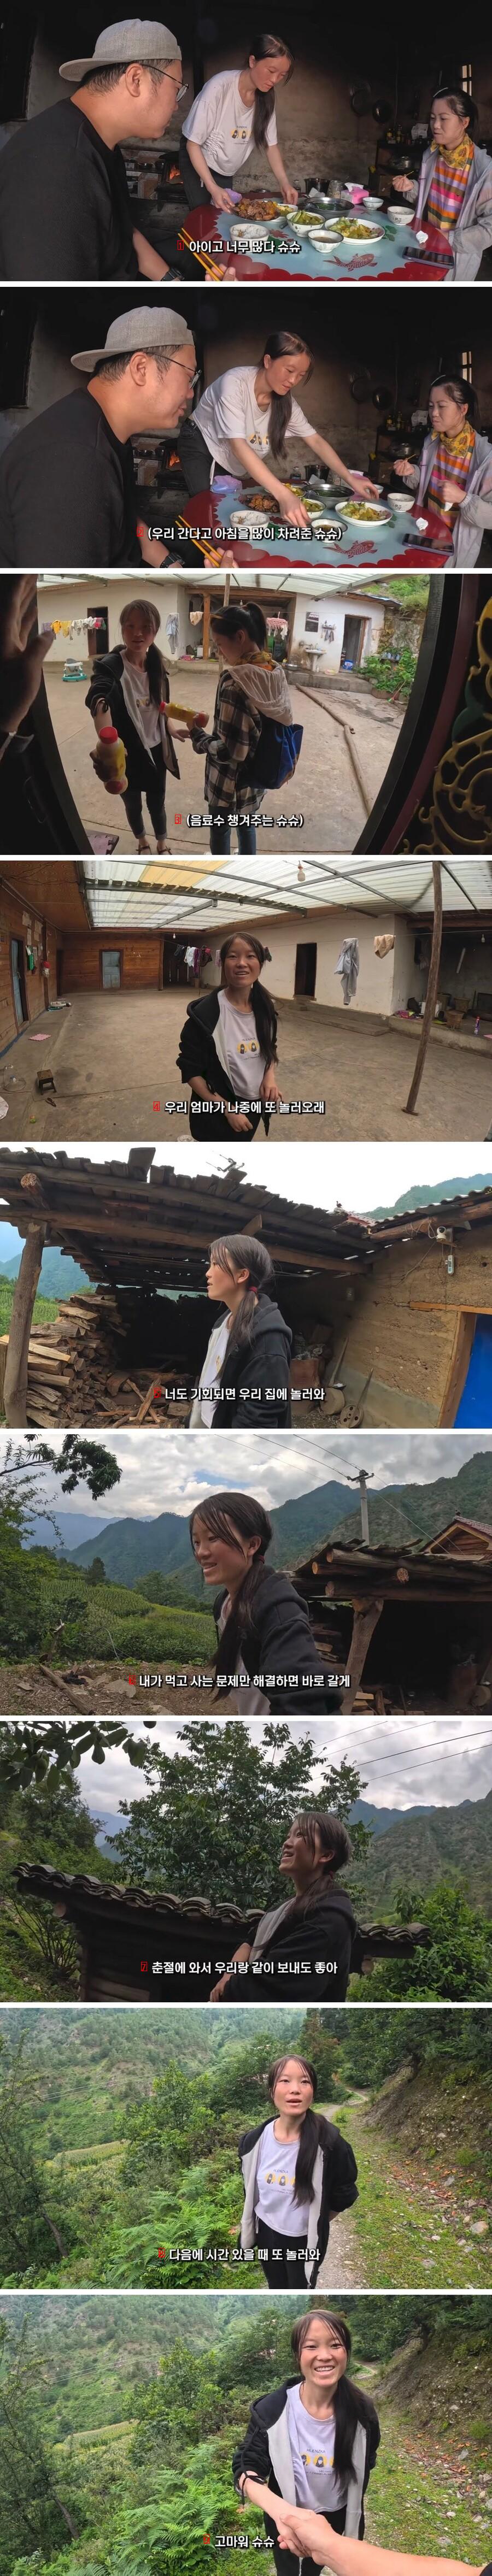 중국의 깊은 오지 시골 마을을 방문한 여행 유튜버